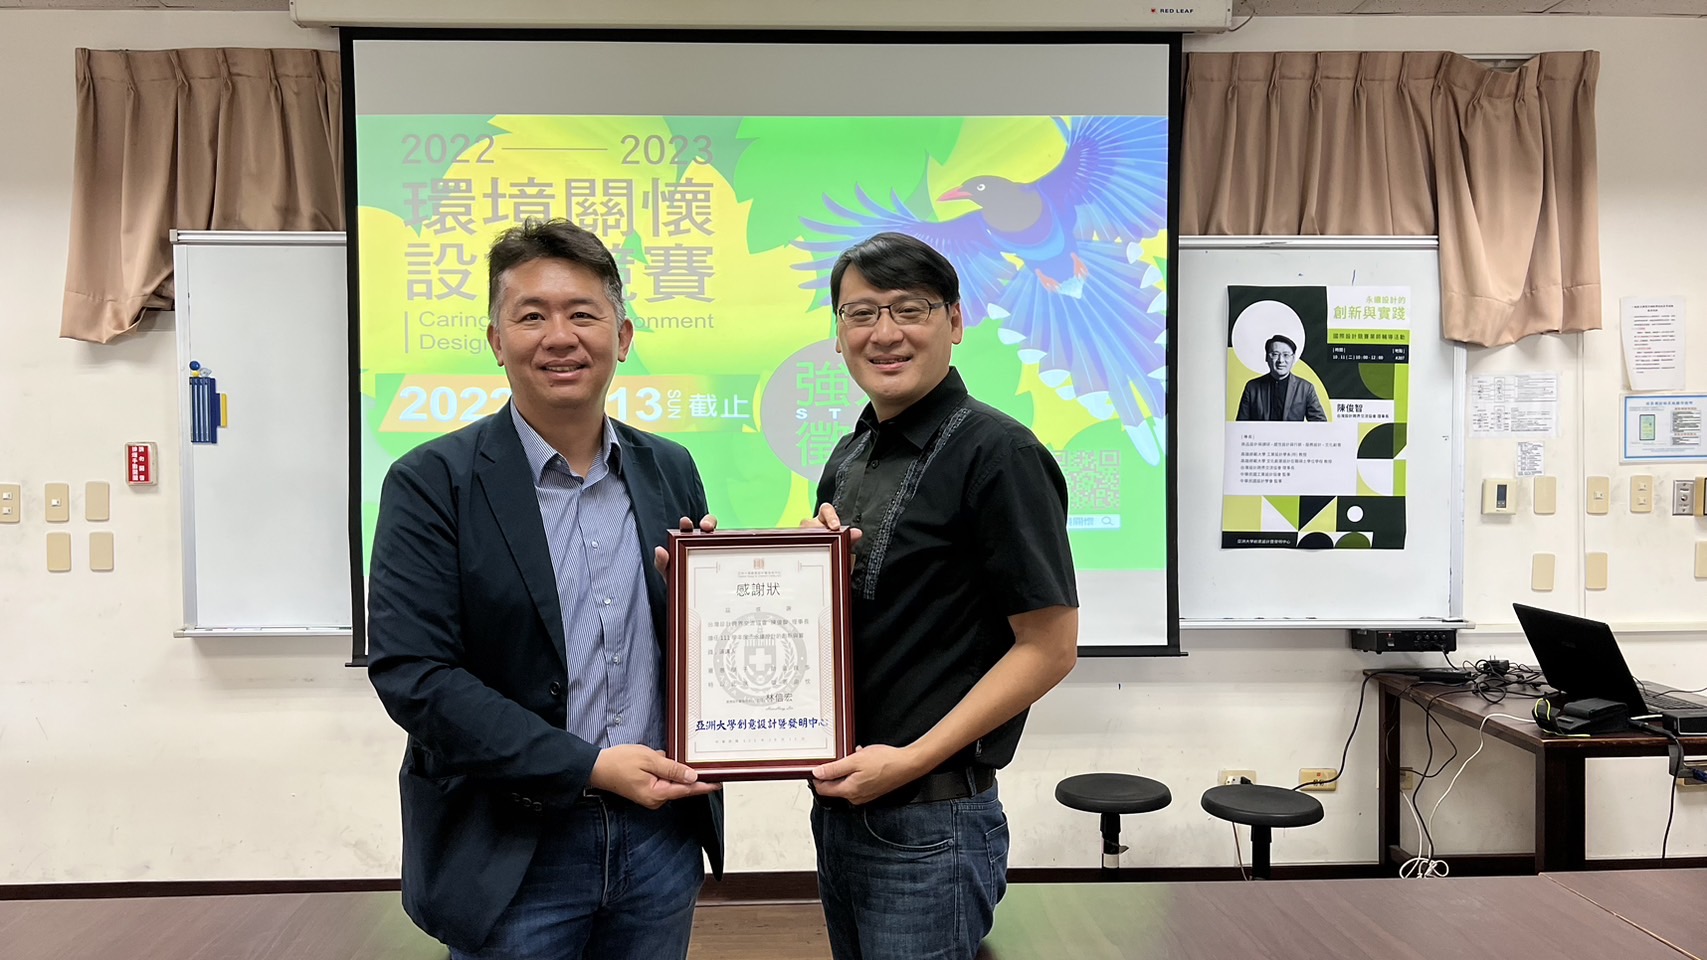 圖為台灣設計跨界交流協會理事長陳俊智(右)，受邀到亞大演講。林副院長兼主任致贈感謝狀。